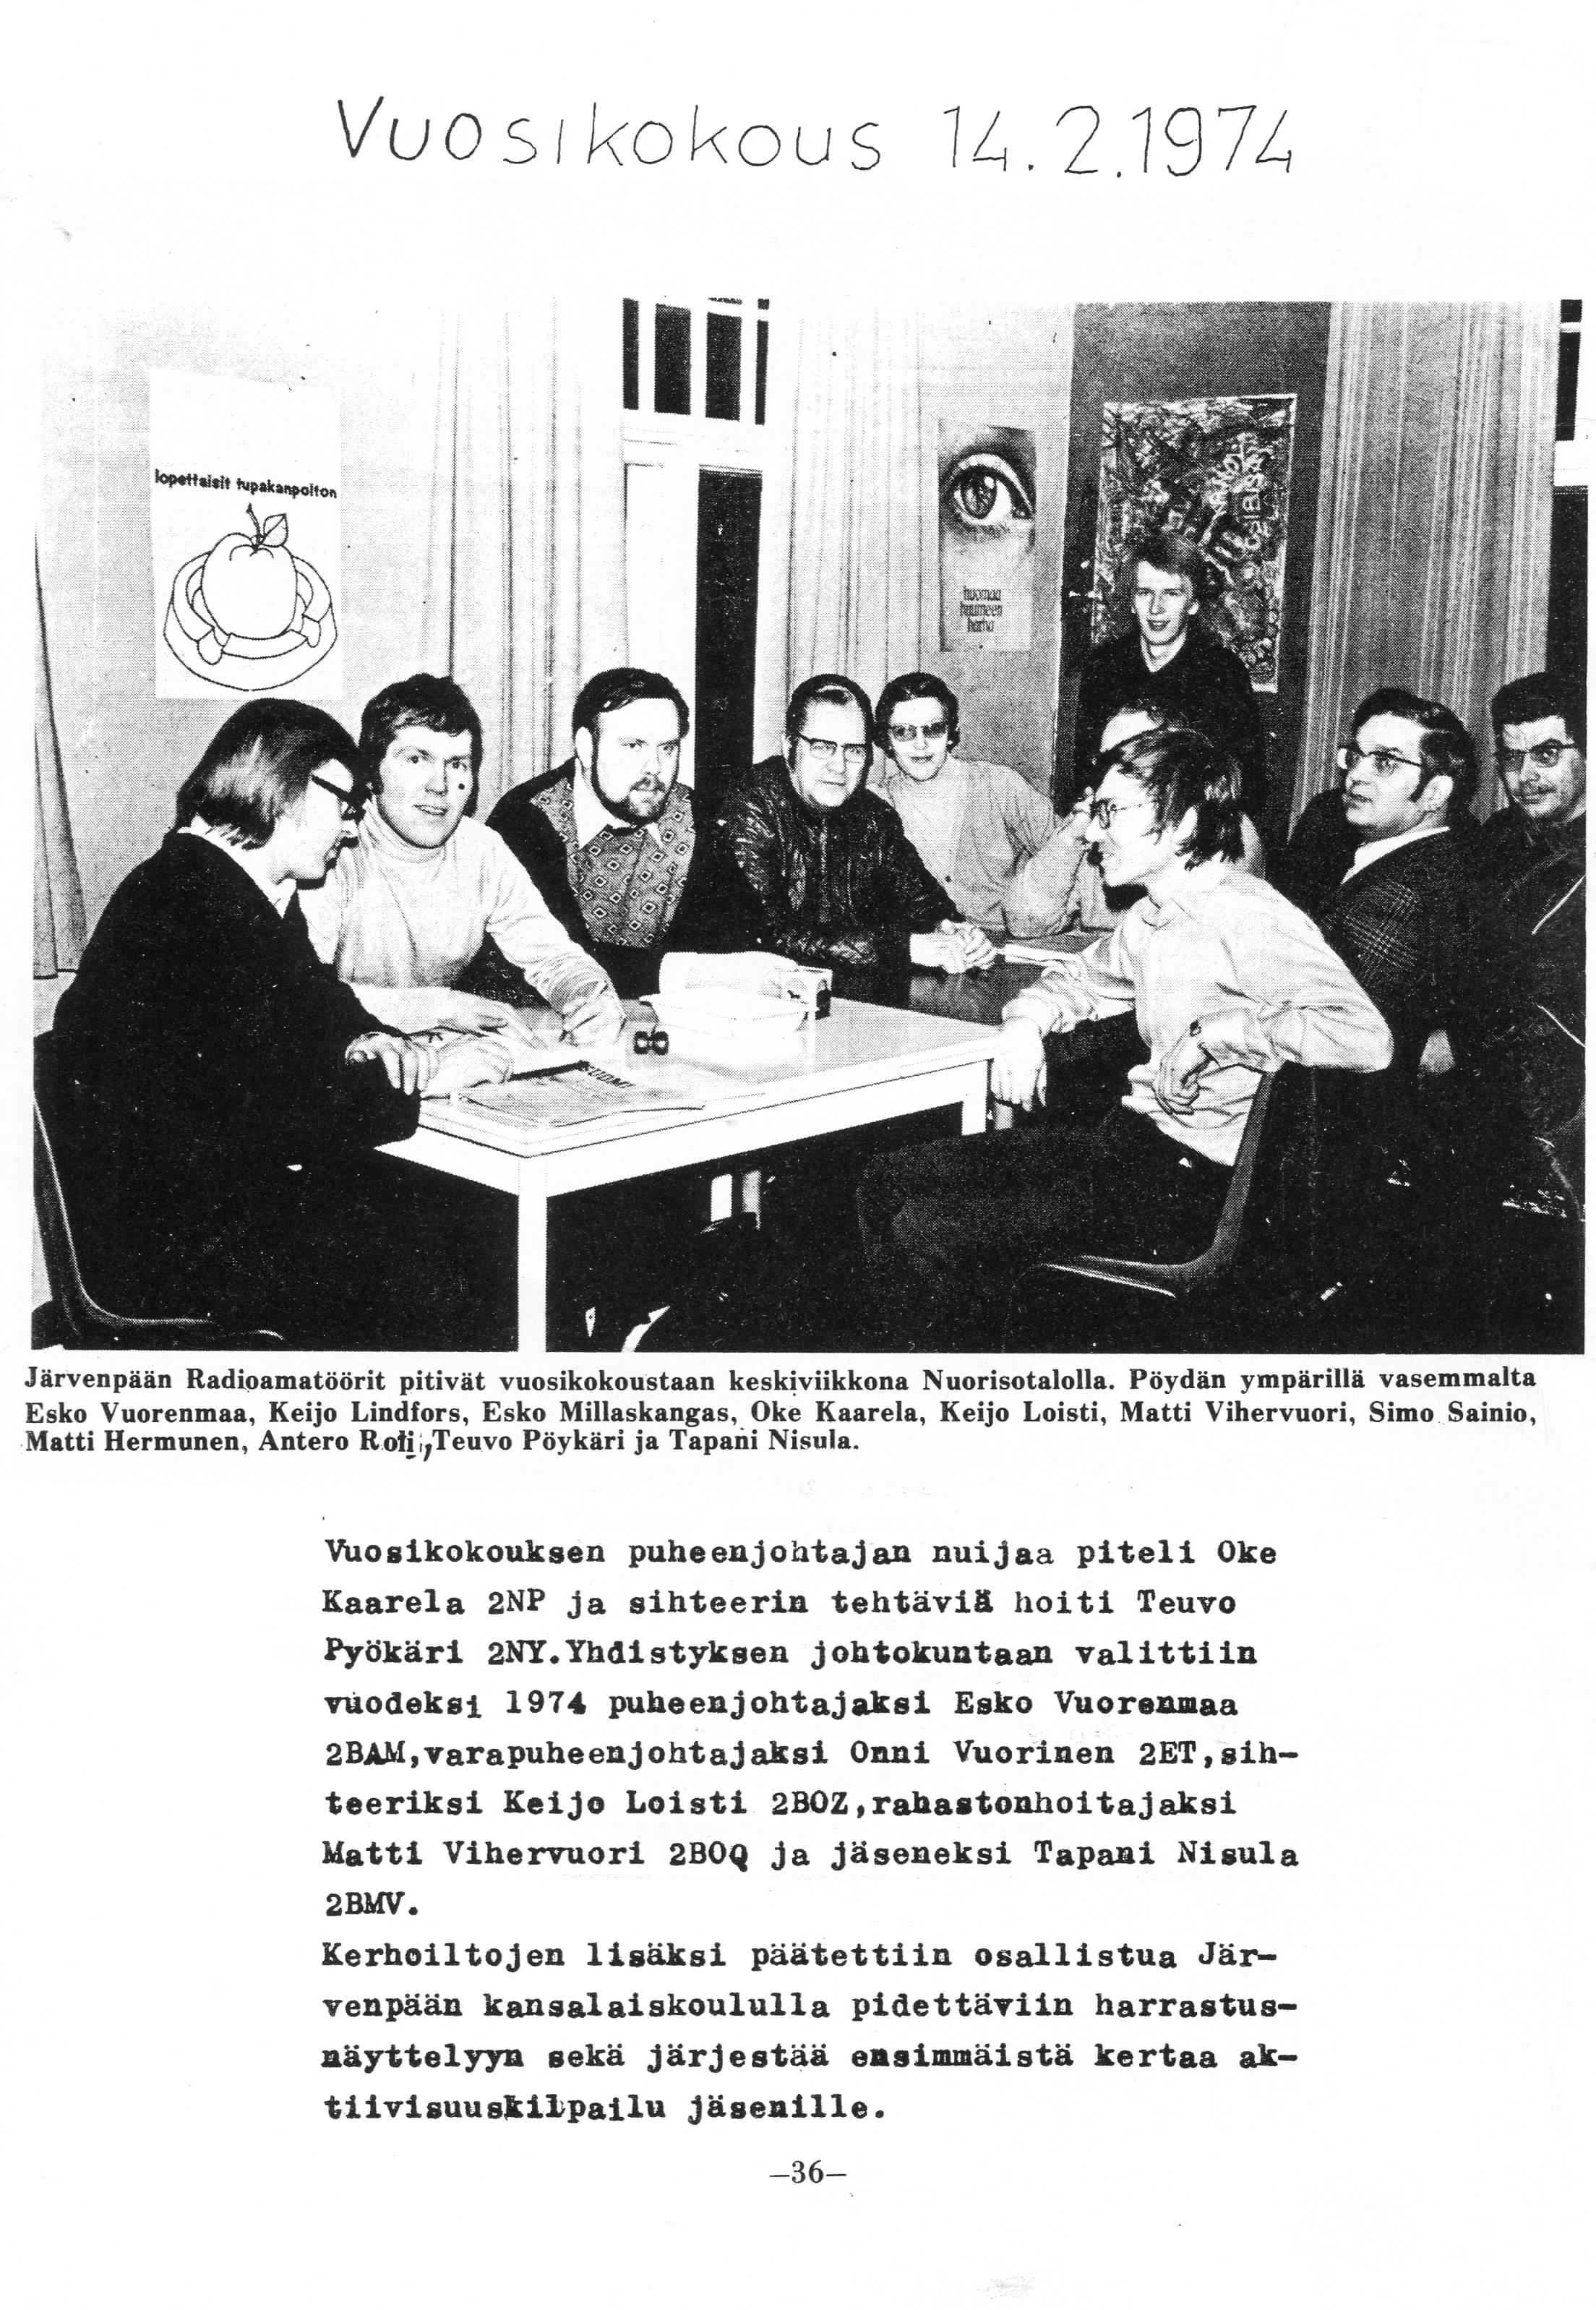 Vuosikokous M.2. 974 Jarvenpaan Radipamatdorit pitivat vuosikokoustaan keskiviikkona Nuorisotalolla.